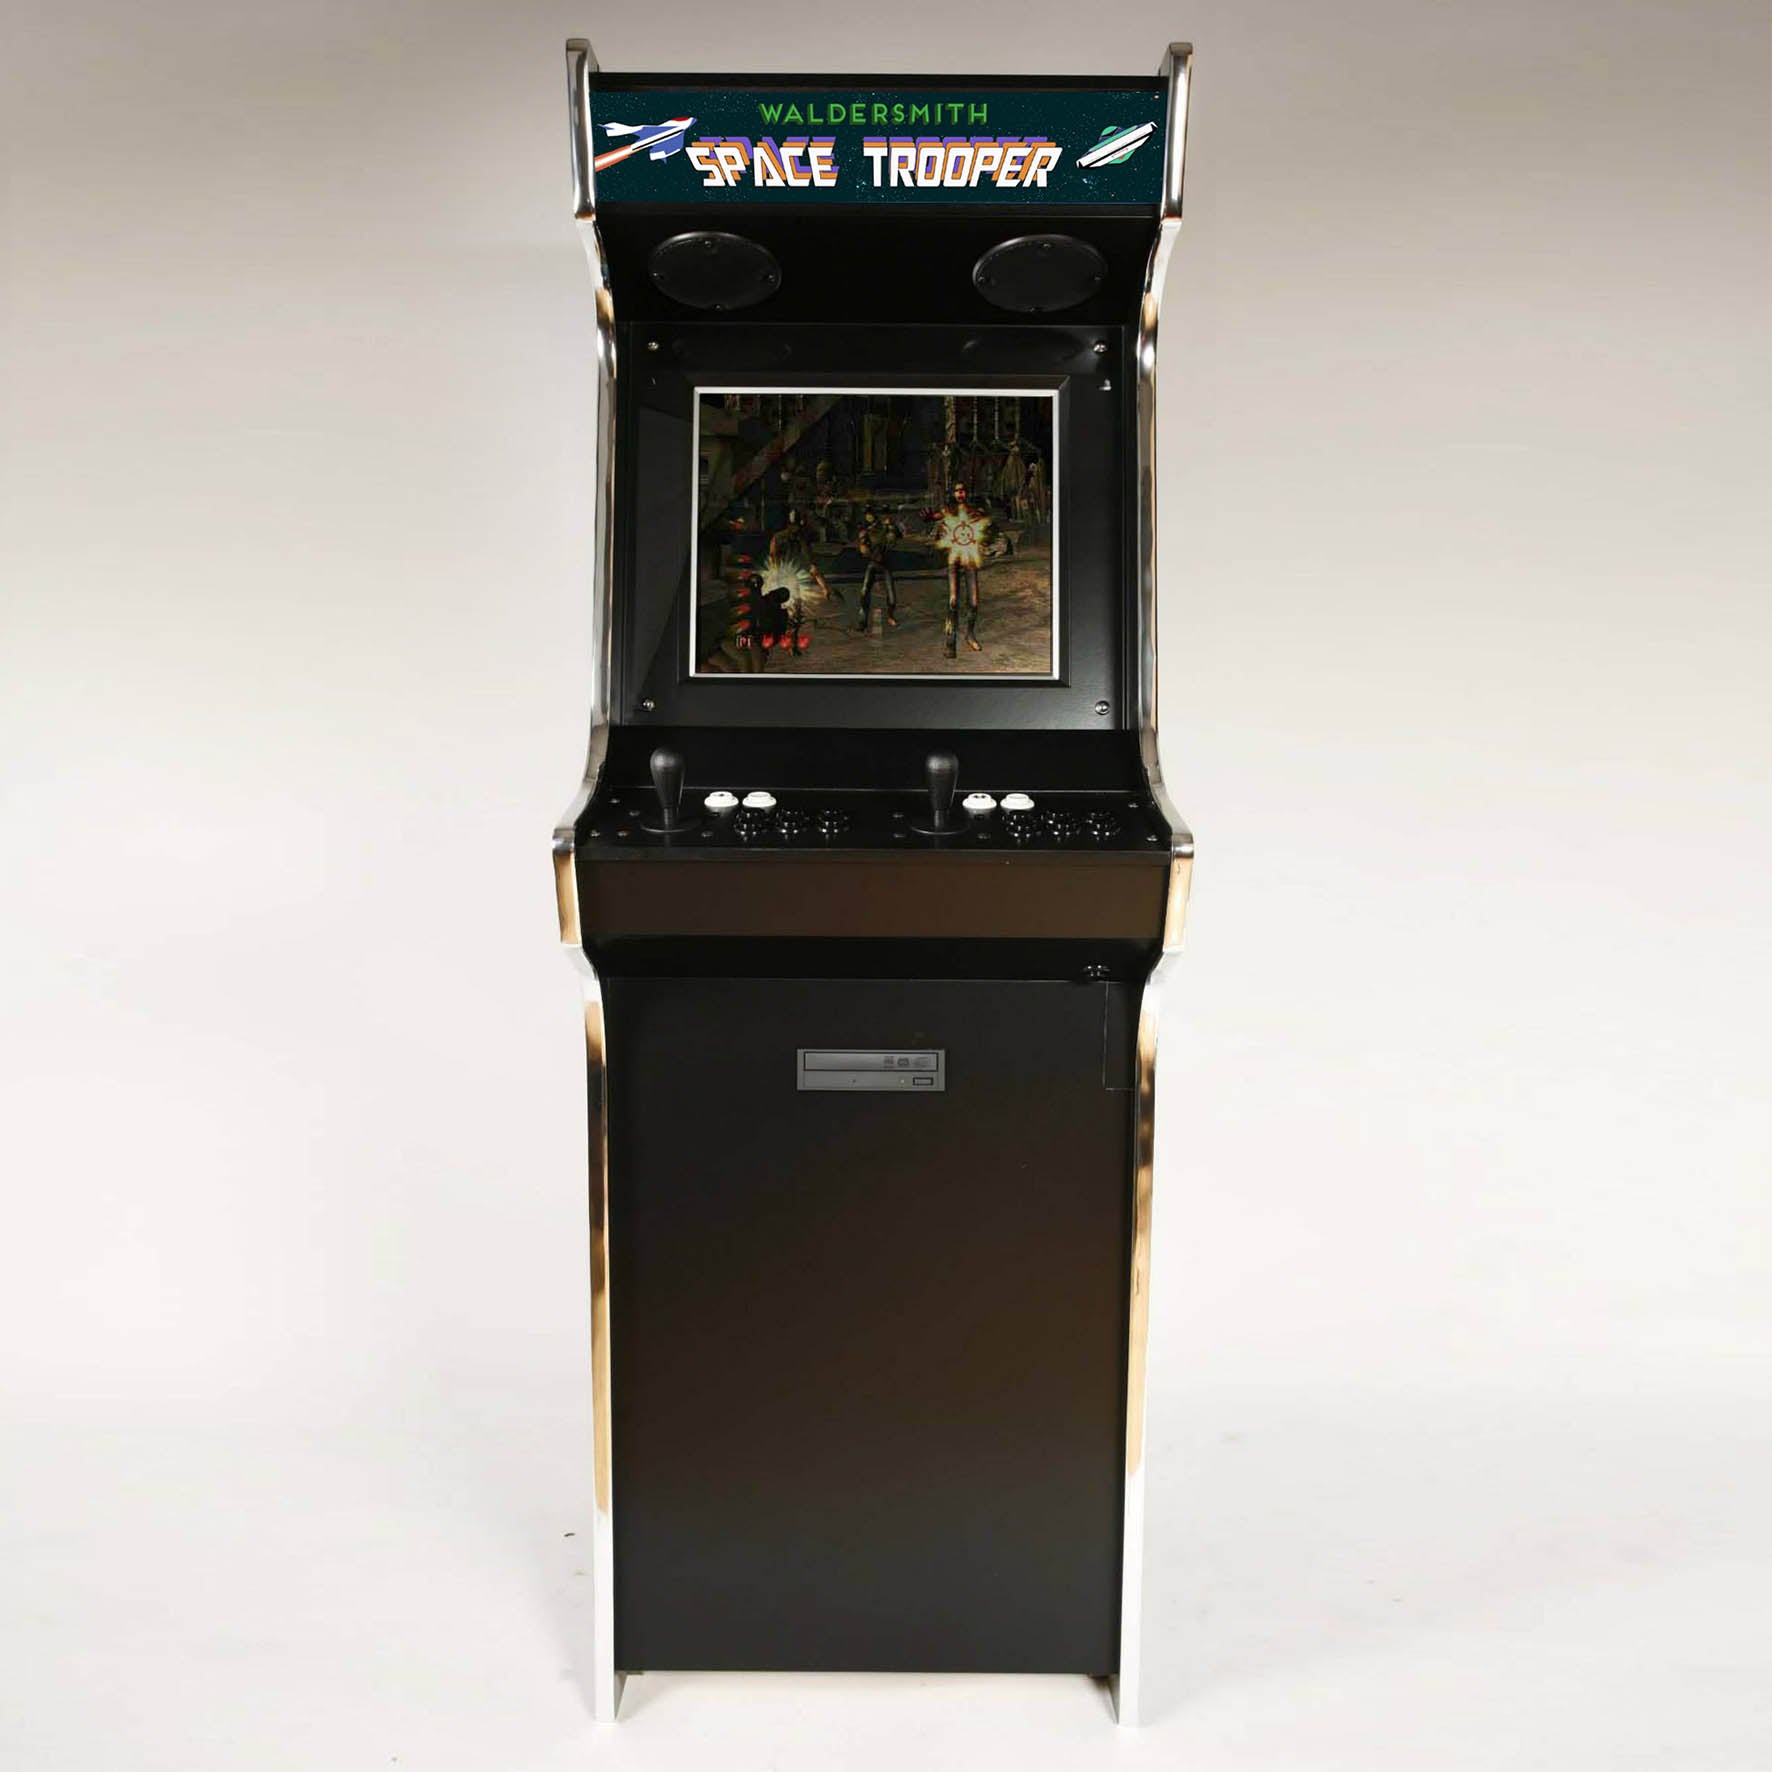 Space Trooper Arcade Machine by Waldersmith